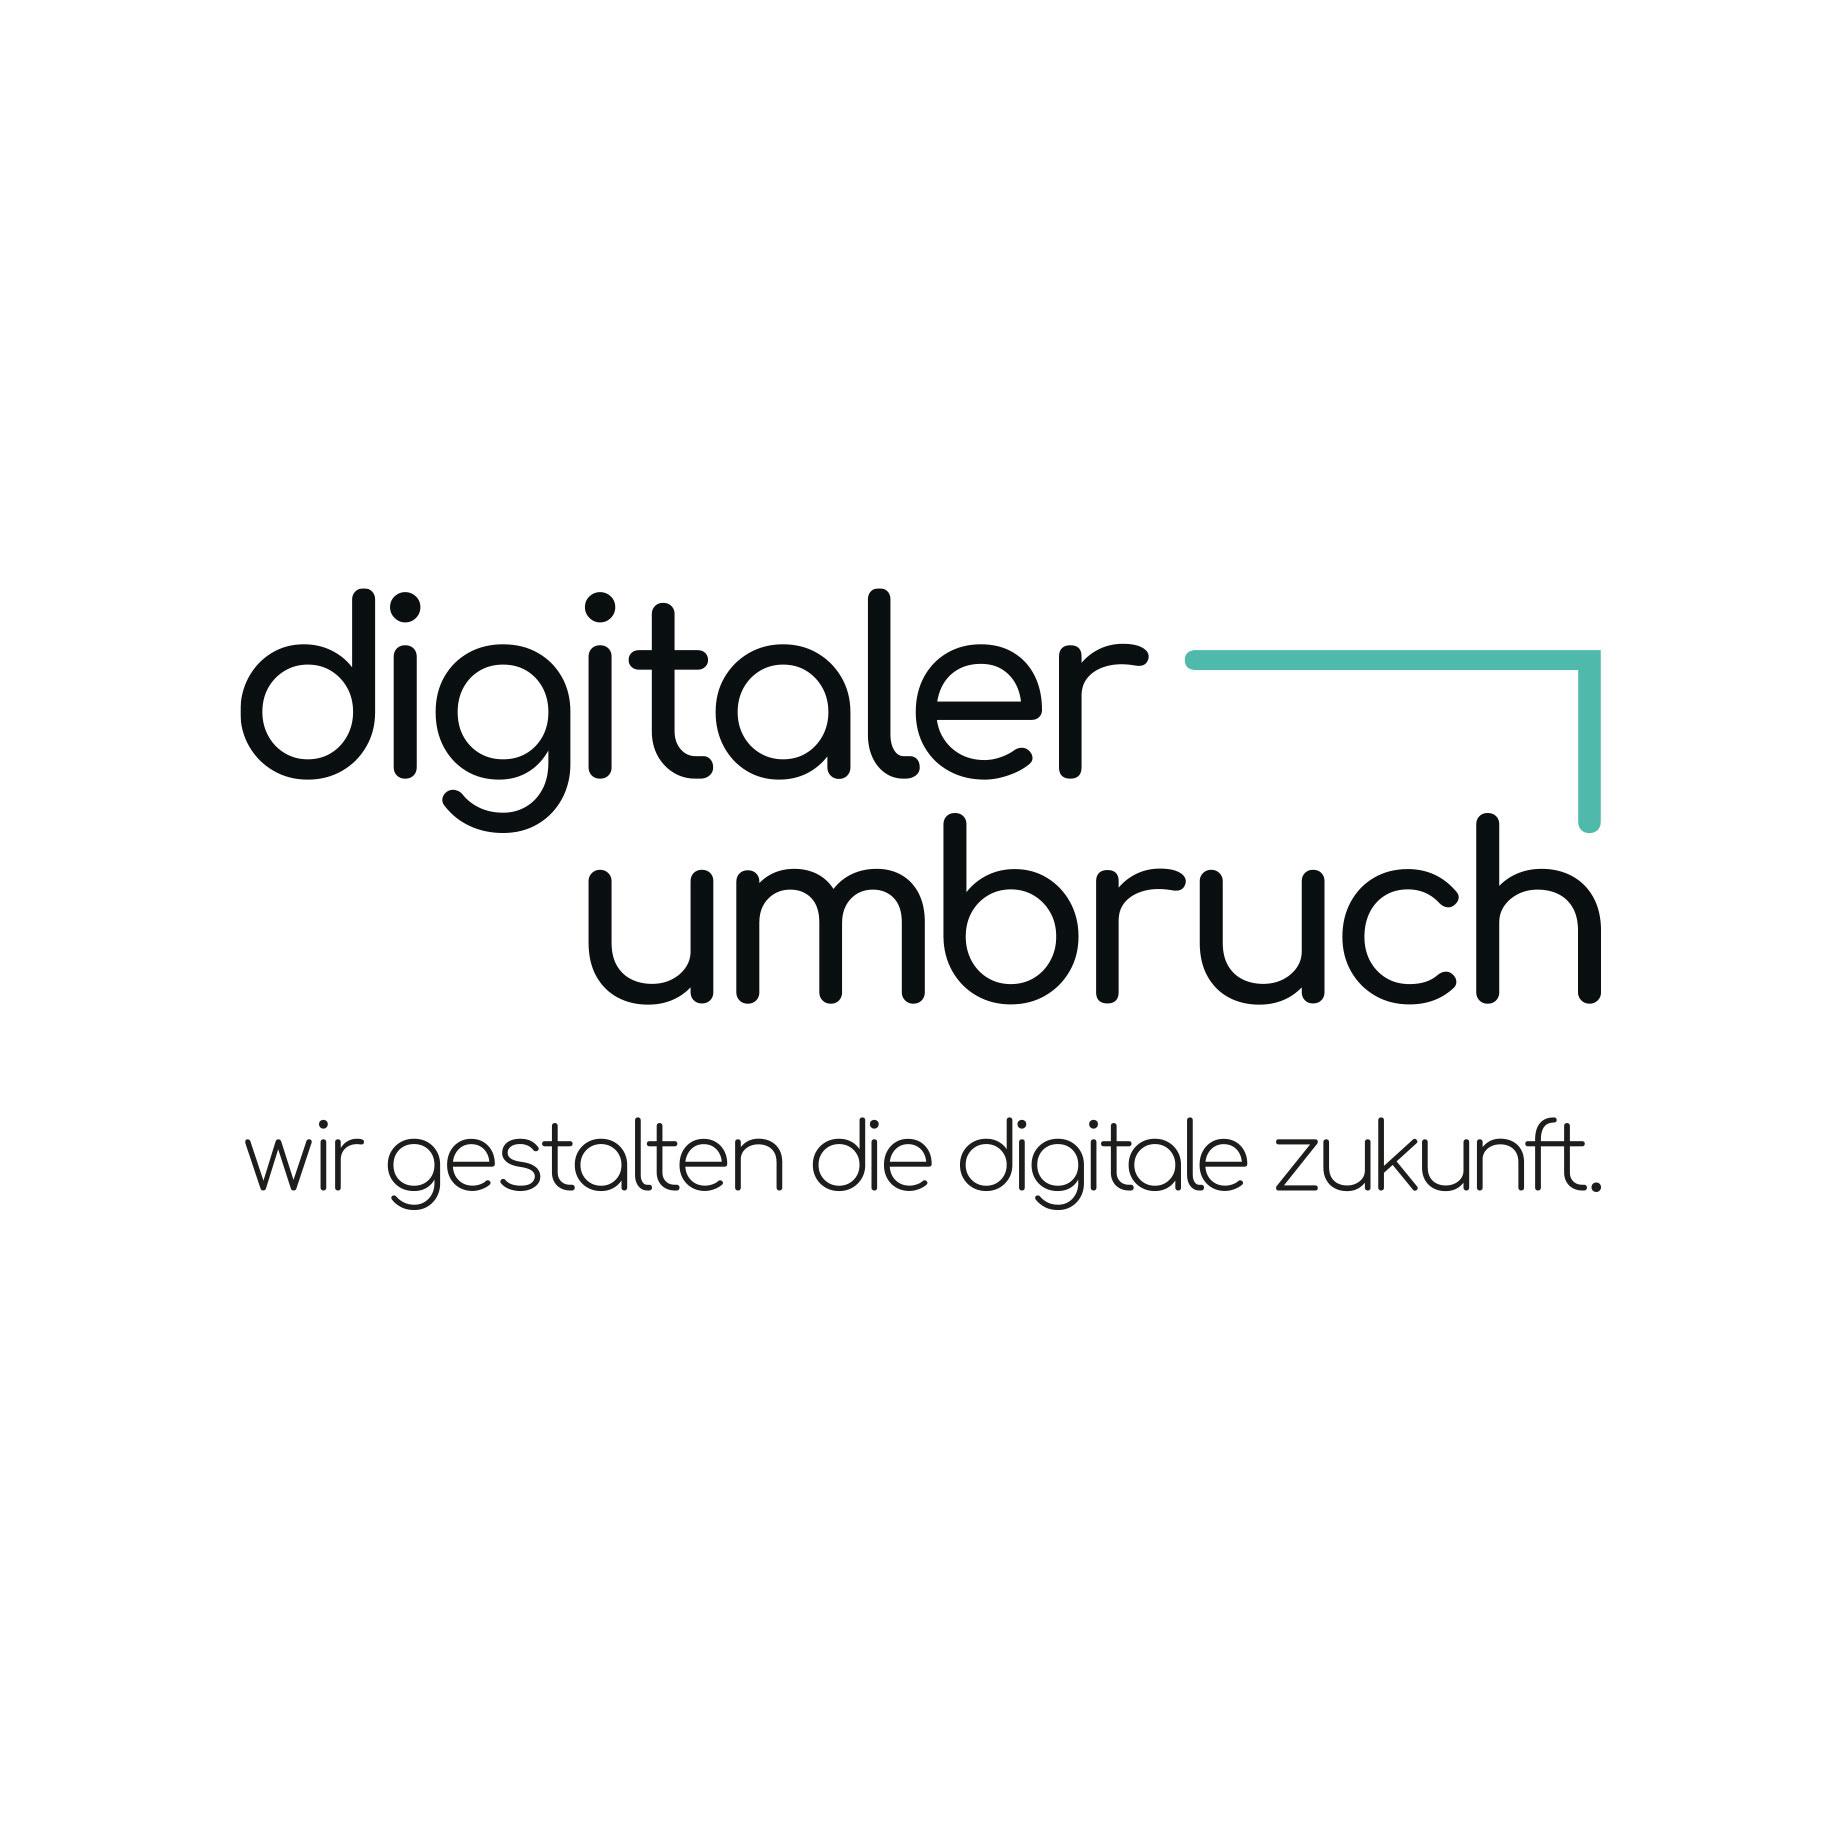 Umbruch - Agentur für digitale Transformation GmbH in Oranienburg - Logo